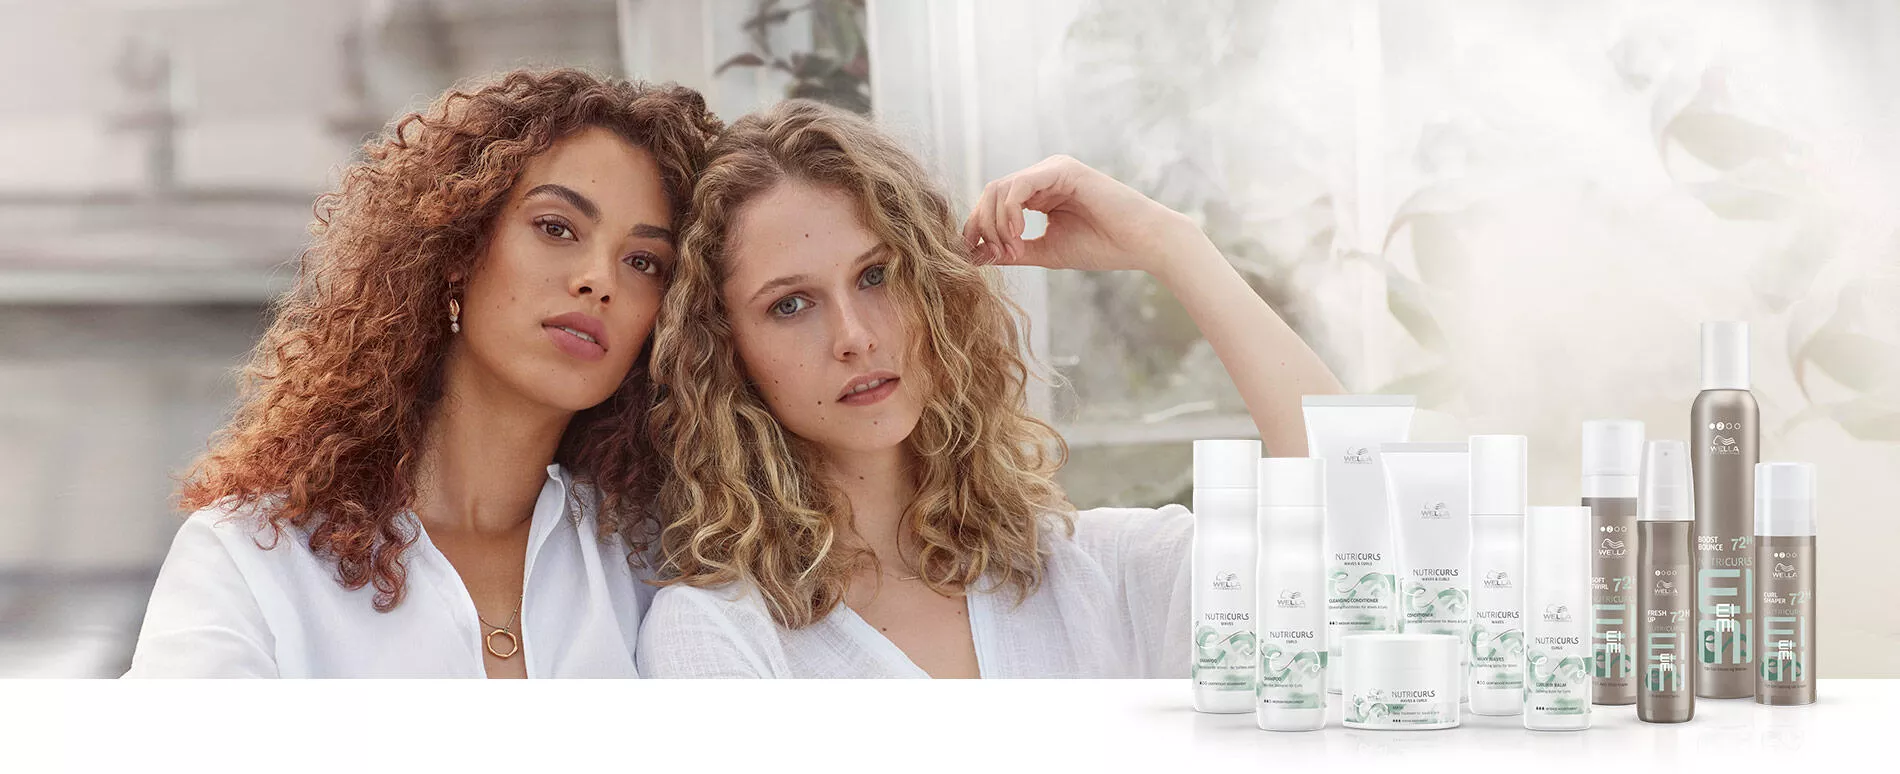 Deux femmes aux cheveux mi-longs avec des boucles serrées habillées en blanc, assises ensemble, avec des bouteilles de produits NUTRICURLS